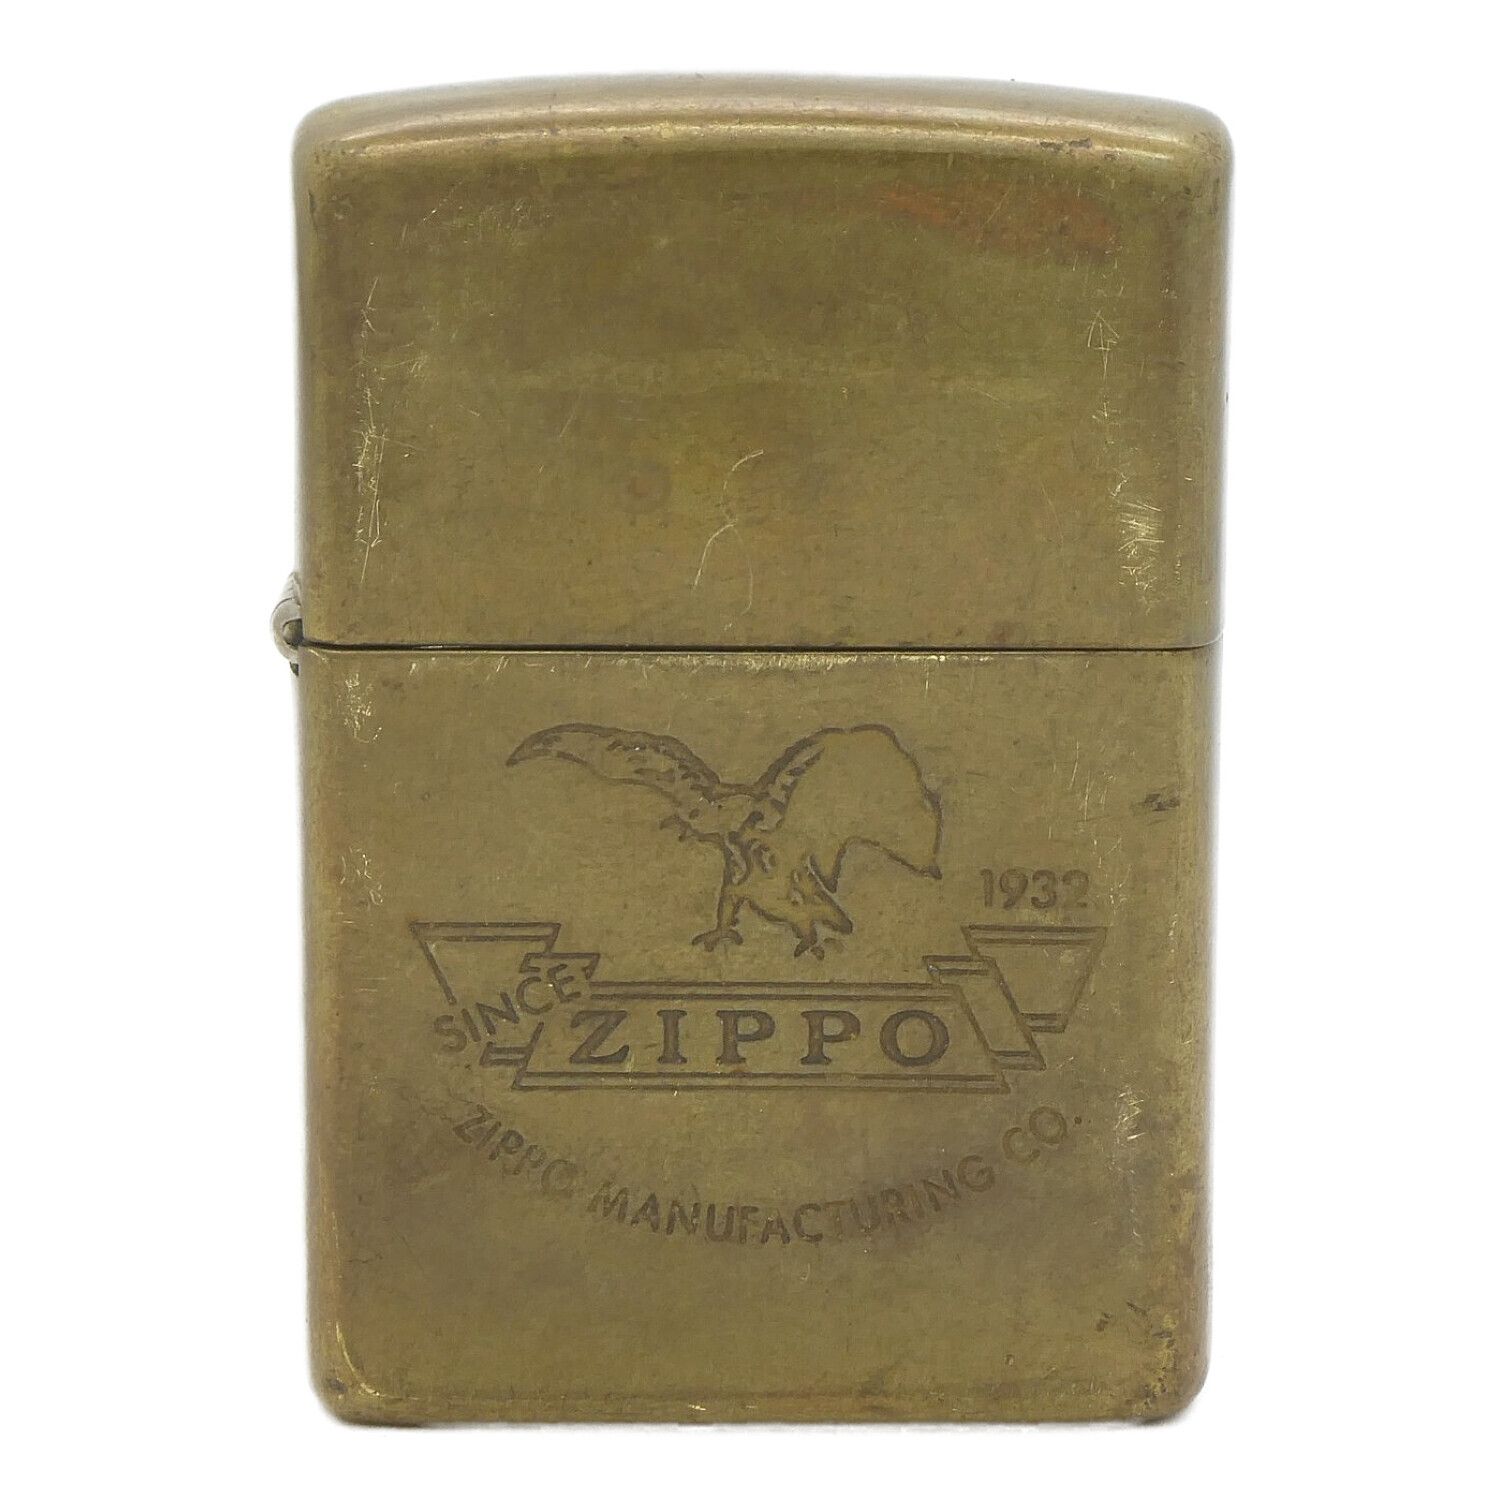 ZIPPO (ジッポ) SINCE 1932 イーグル 1995年製